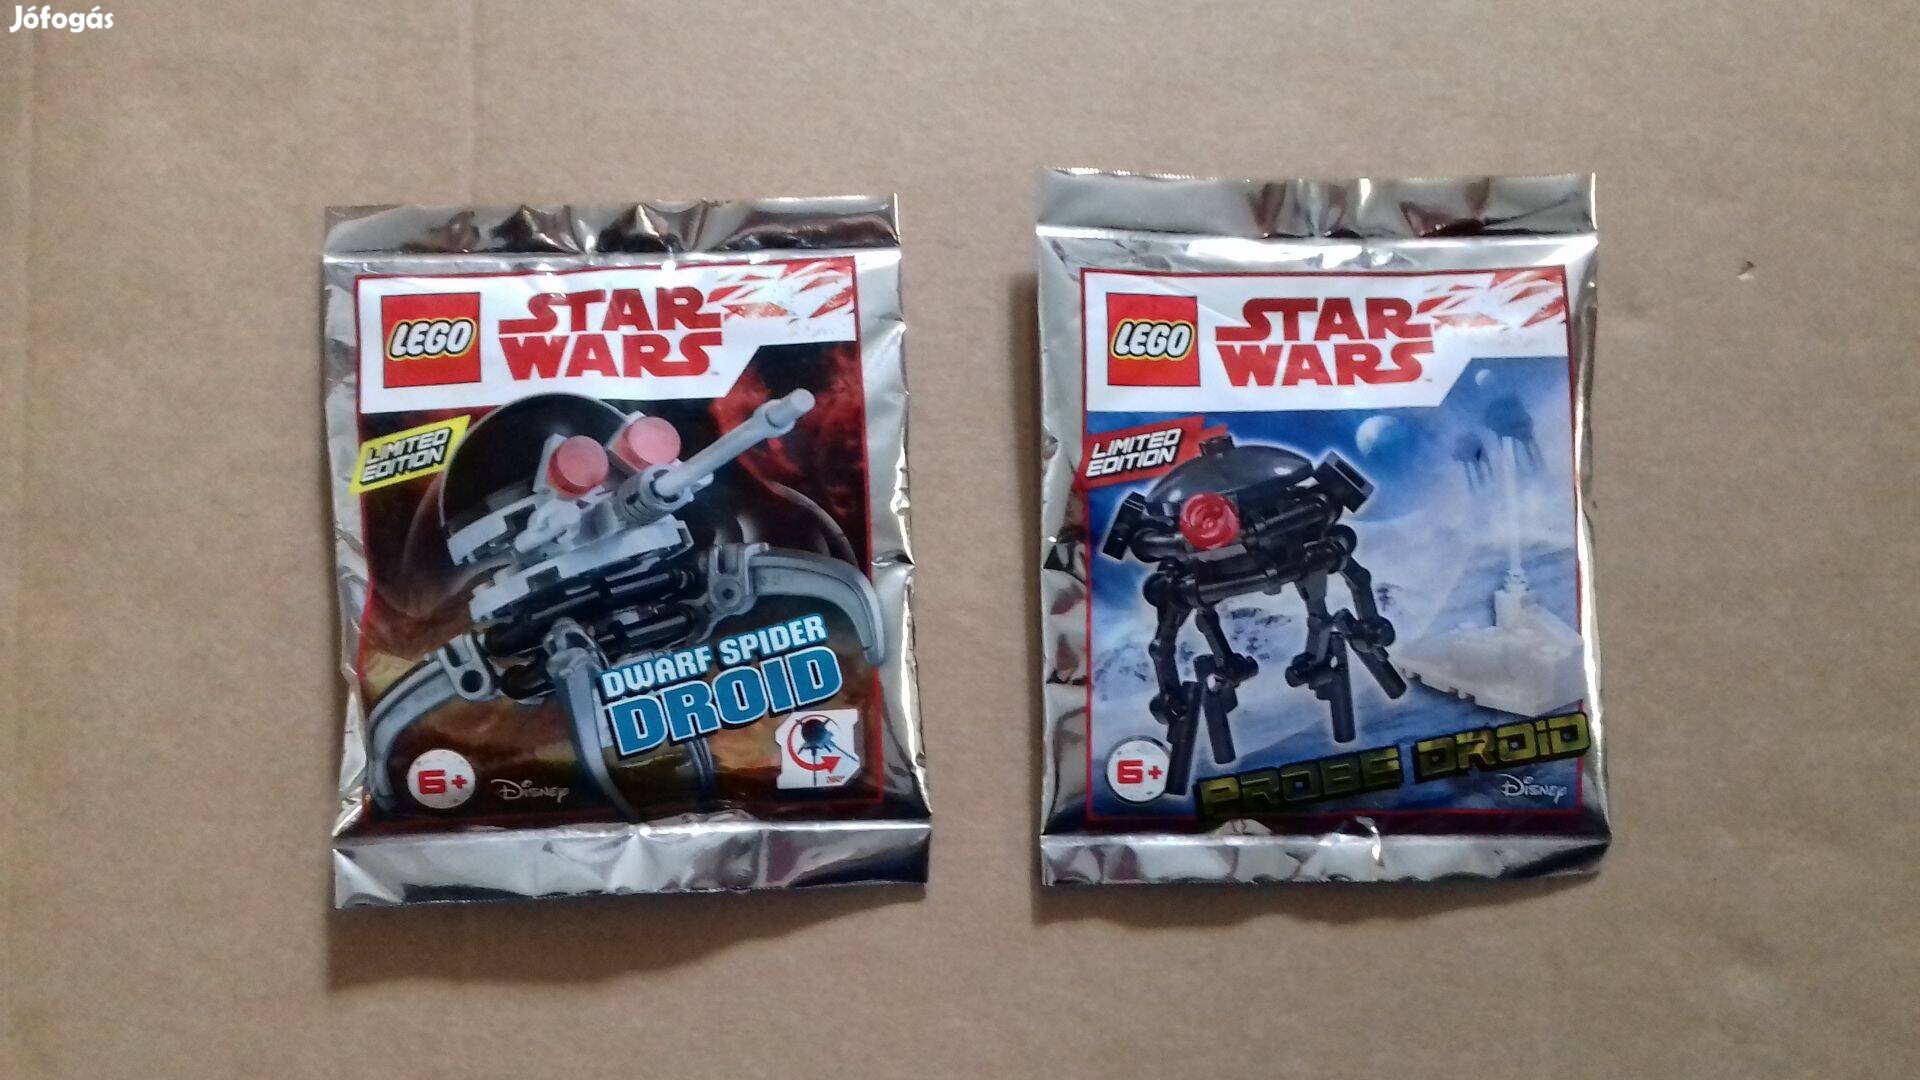 Droidok: Star Wars LEGO Dwarf Pókdroid, Probe - Kutasz a 75306 építési